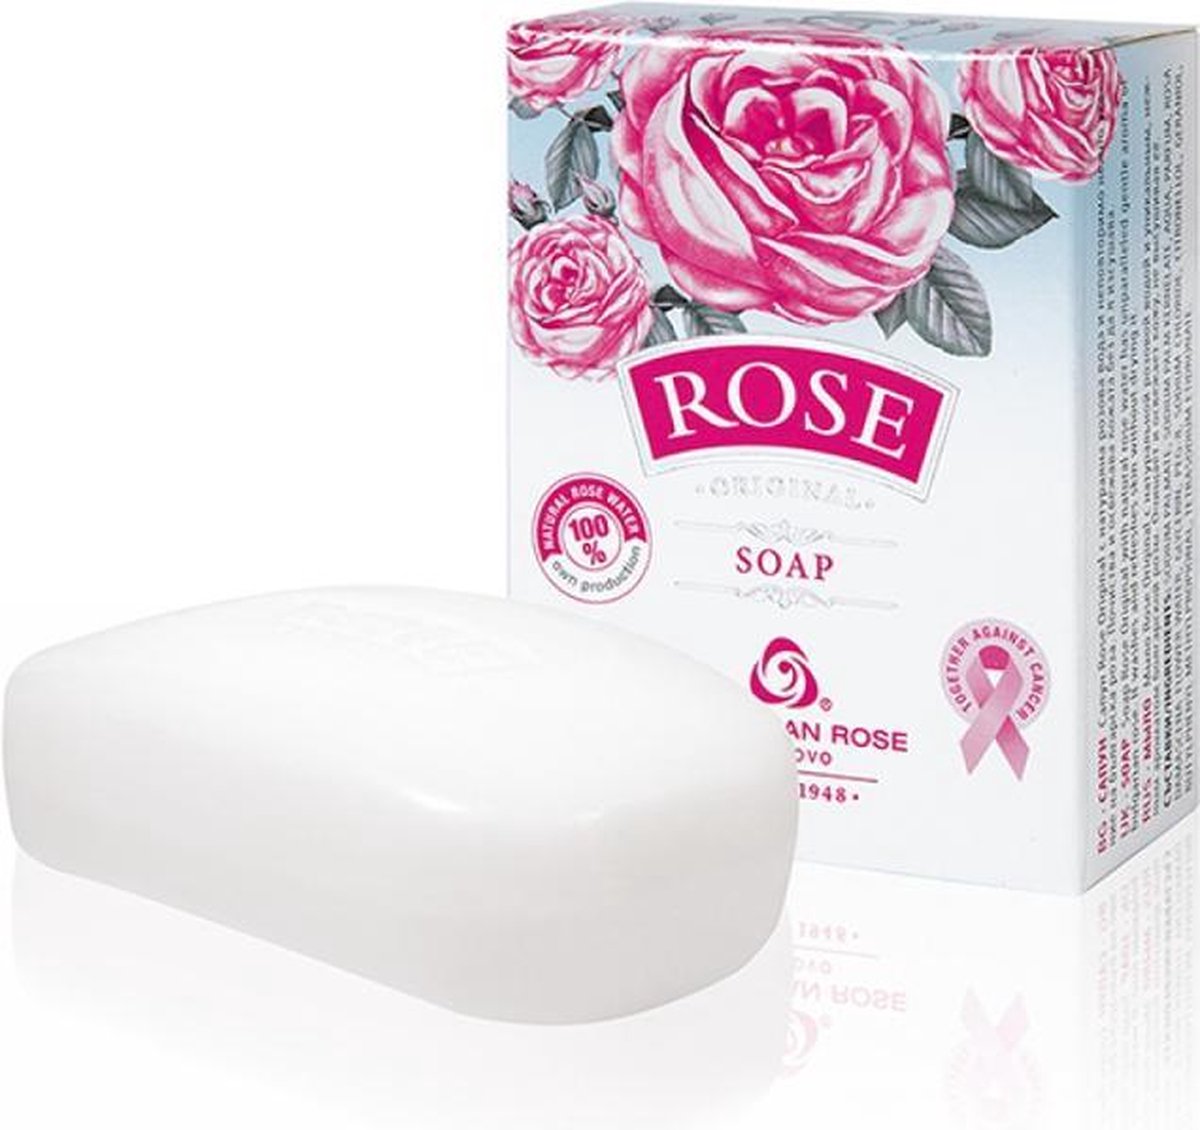 Soap Rose Original | Handzeep met rozenwater | Rozen cosmetica met 100% natuurlijke Bulgaarse rozenolie en rozenwater